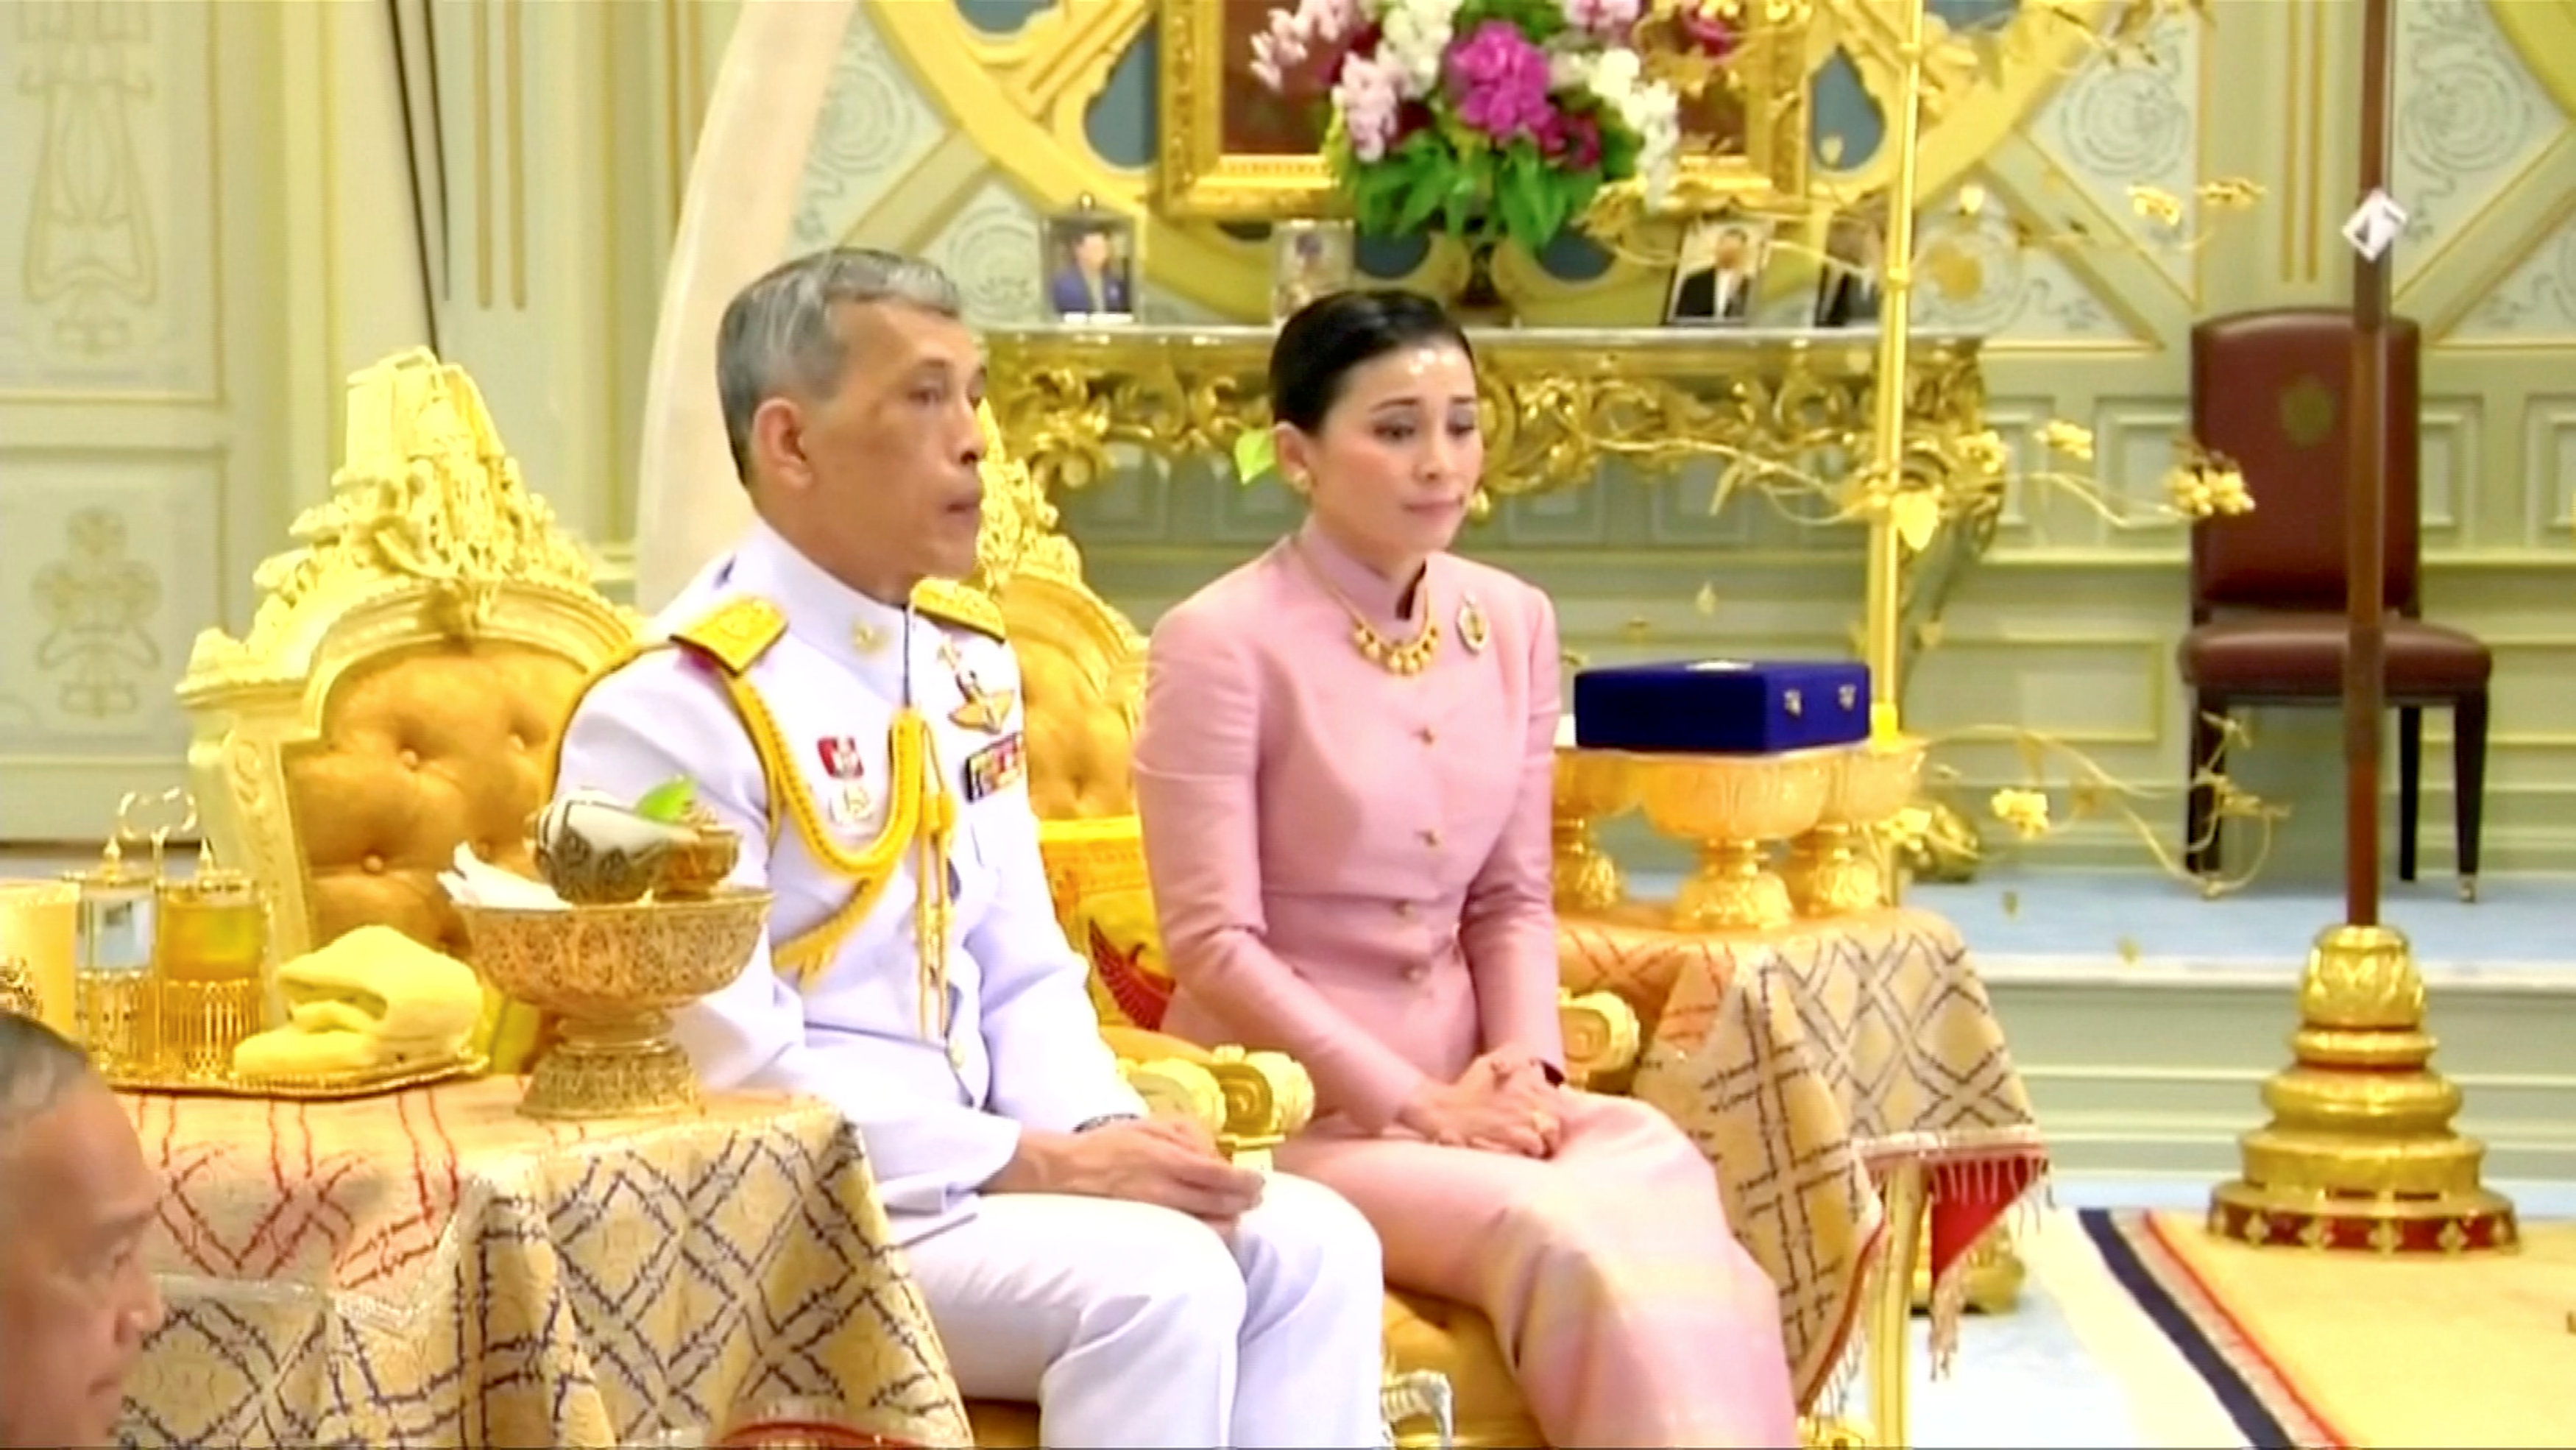 王室释出的册封礼影片中显示，哇集拉隆功穿着白色军装，素提达则是穿着粉色泰国丝质洋装接受册封。-路透社-